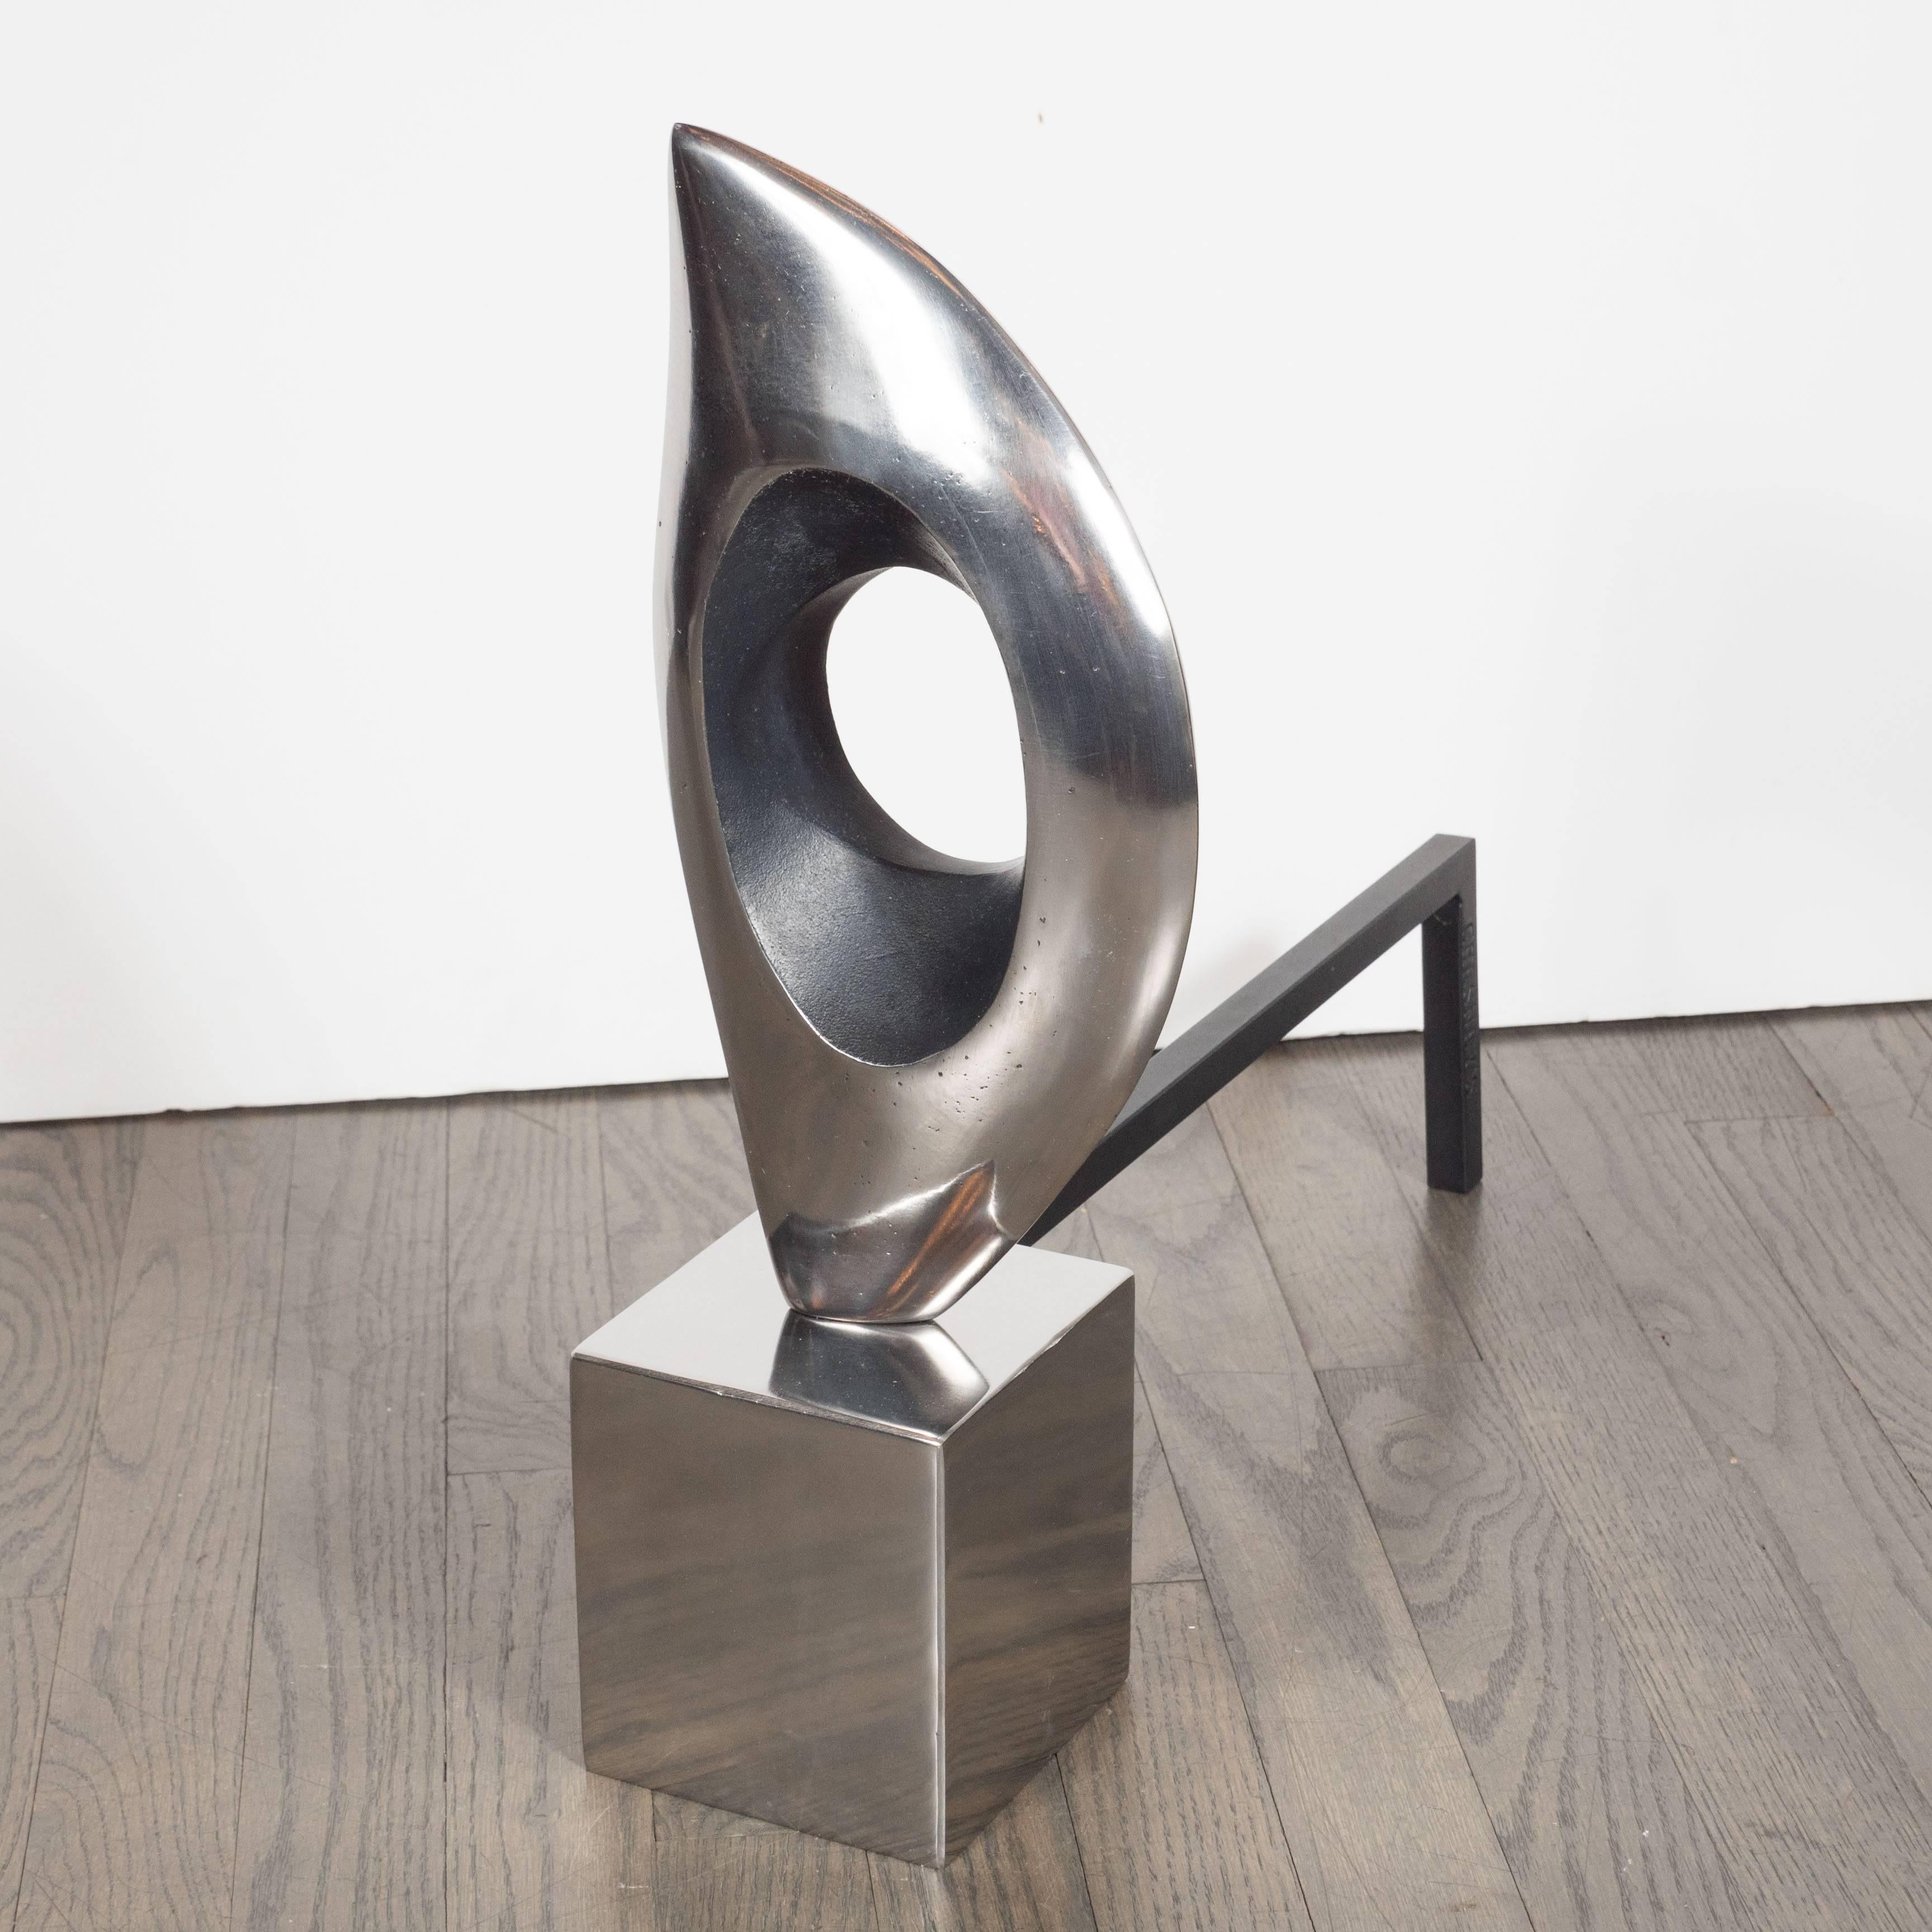 American Pair of Organic Modernist Sculptural Andirons in Nickel & Black Enamel